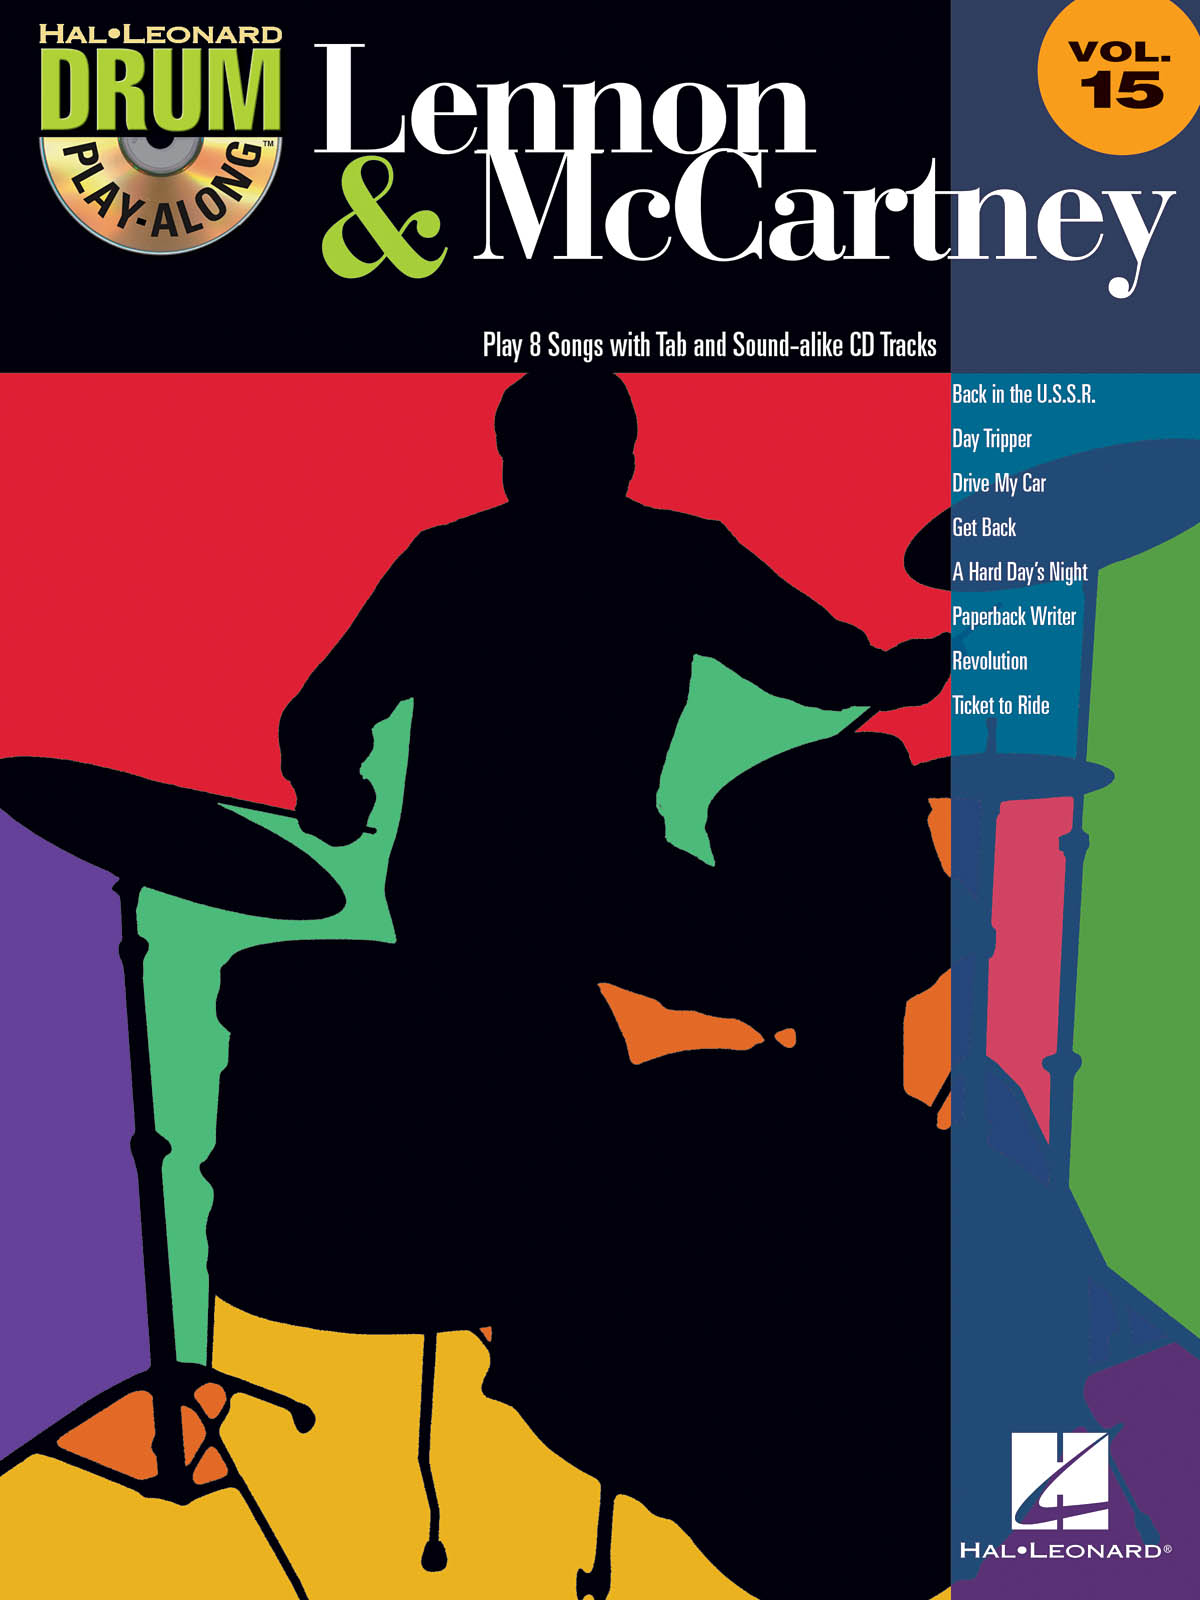 Drum Play-Along Volume 15:  Lennon & McCartney